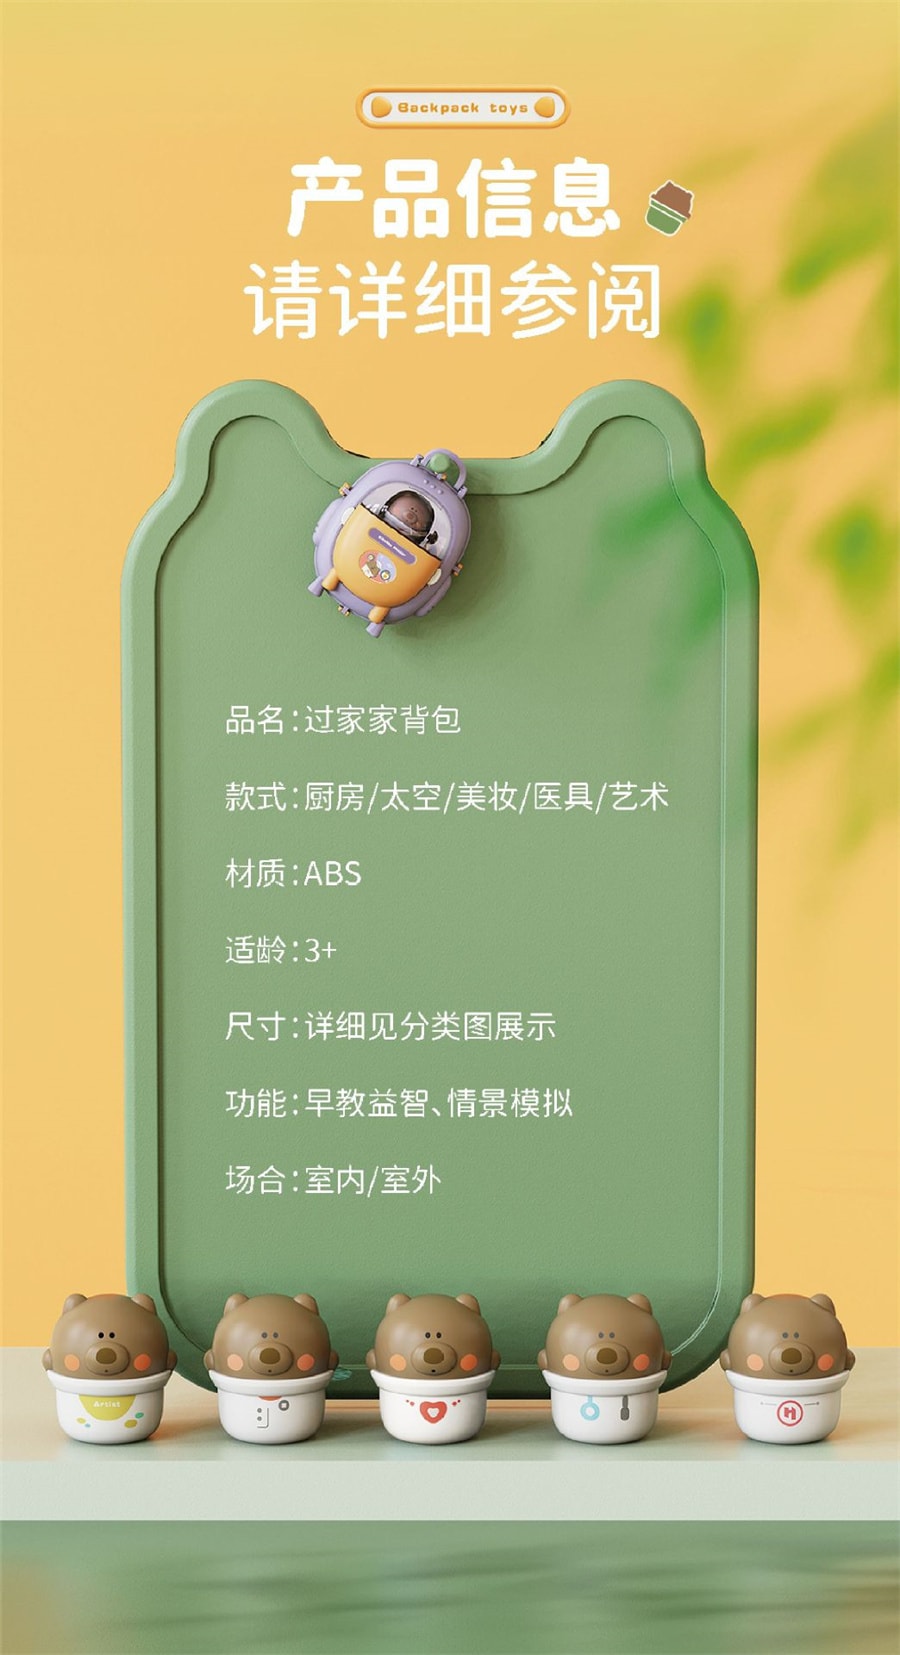 【中国直邮】灵动创想  儿童过家家化妆彩泥套装2合1小熊背包女孩子玩具   化妆款